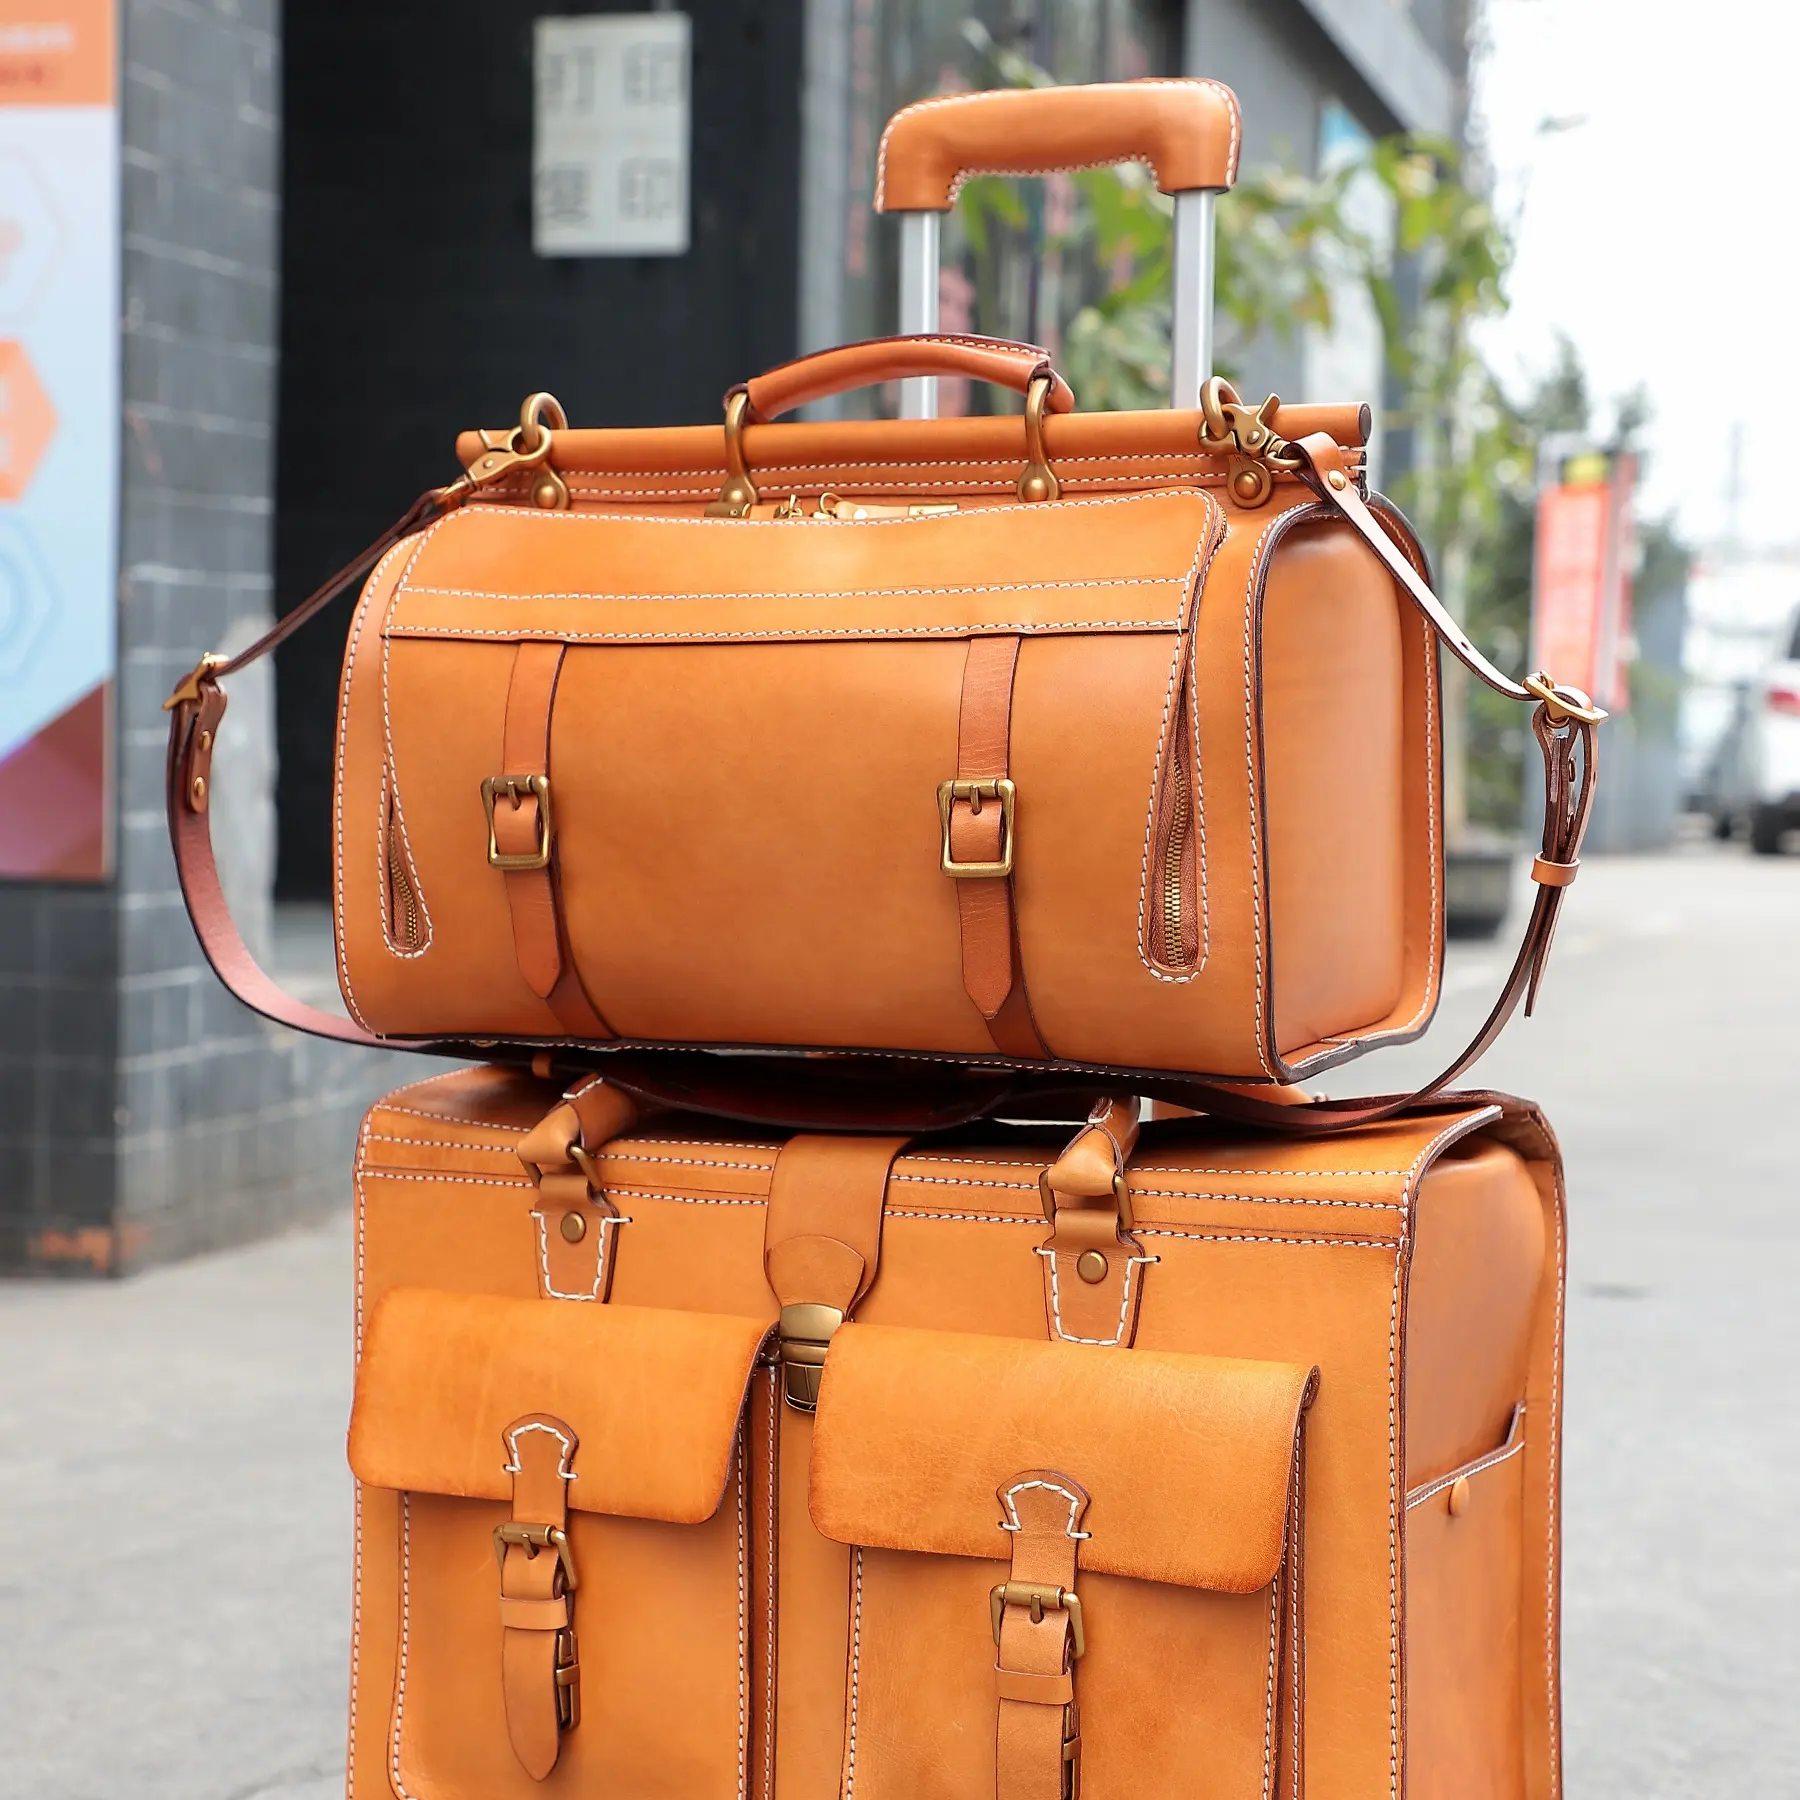 Fashion Luggage Bag Travel Tote Handbags Outdoor Weekender Shoulder Luggage Waterproof Sports Genuine Leather Custom Duffel Bags